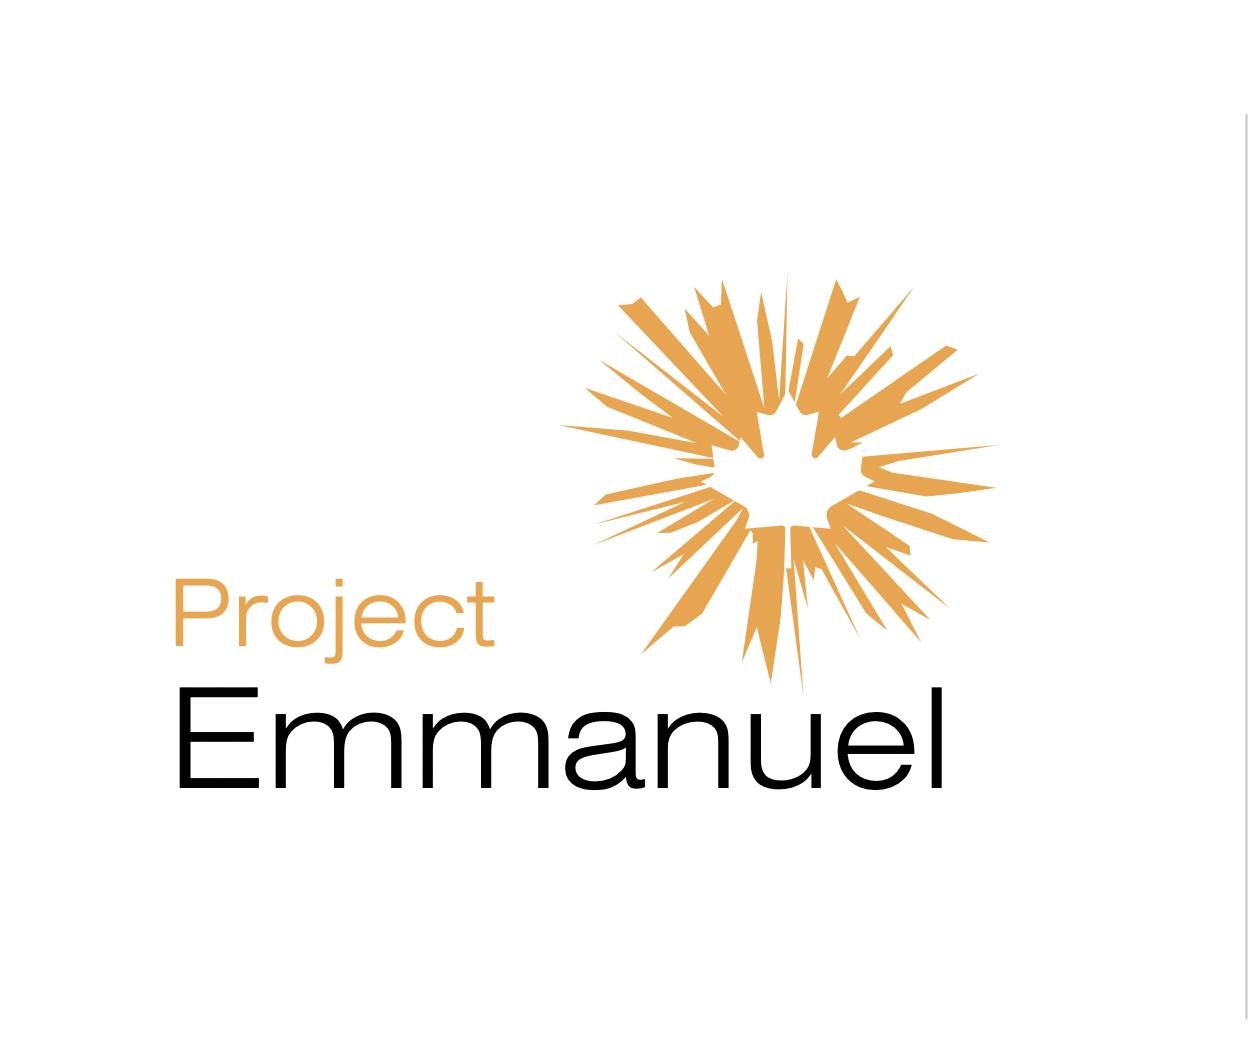 Project Emmanuel